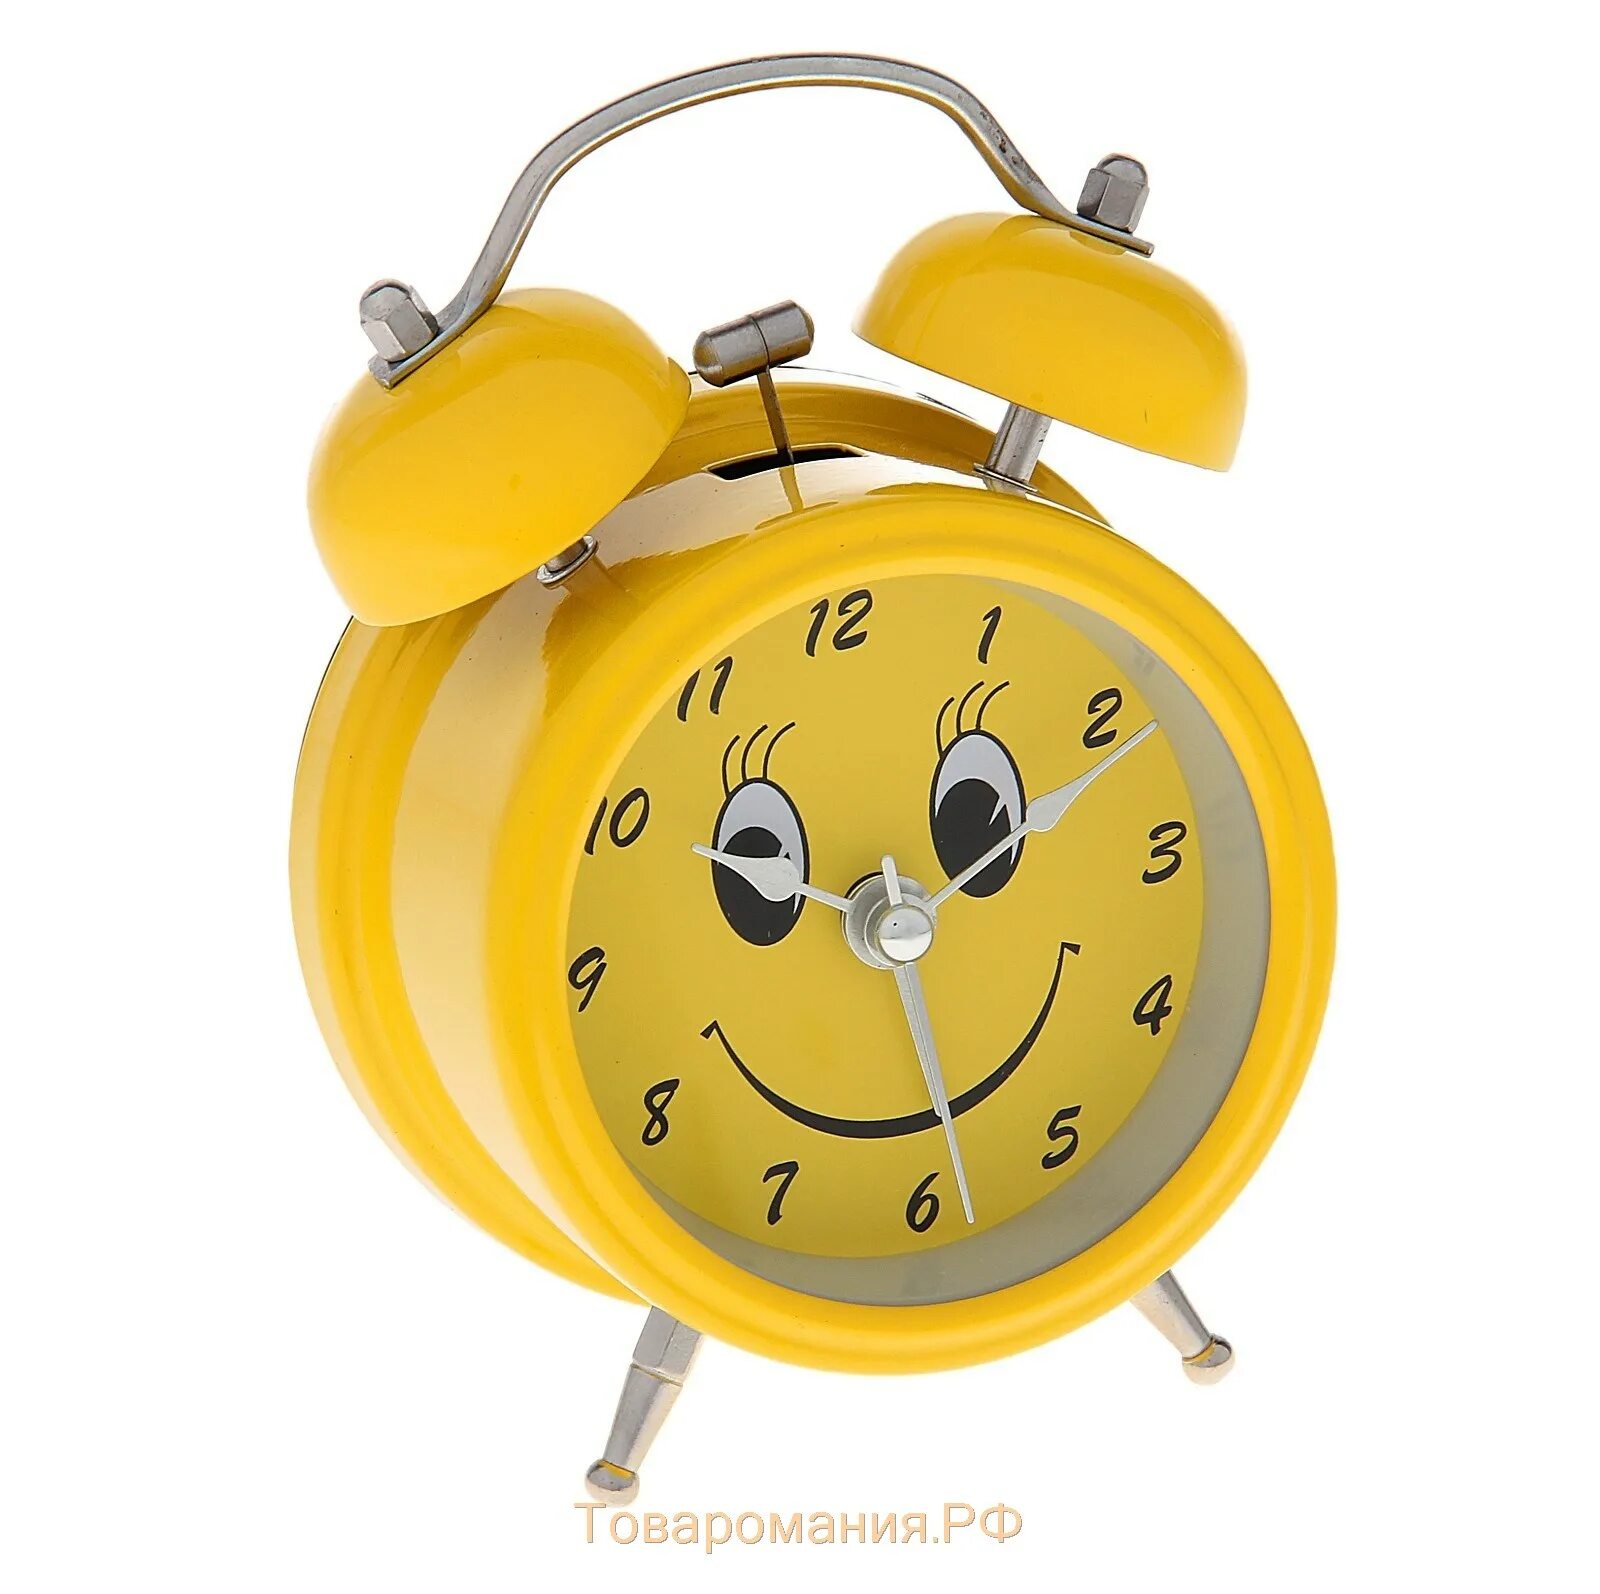 Фотка будильника. Часы будильник. Бульник. Часы будильник для детей. Настольные часы с будильником.